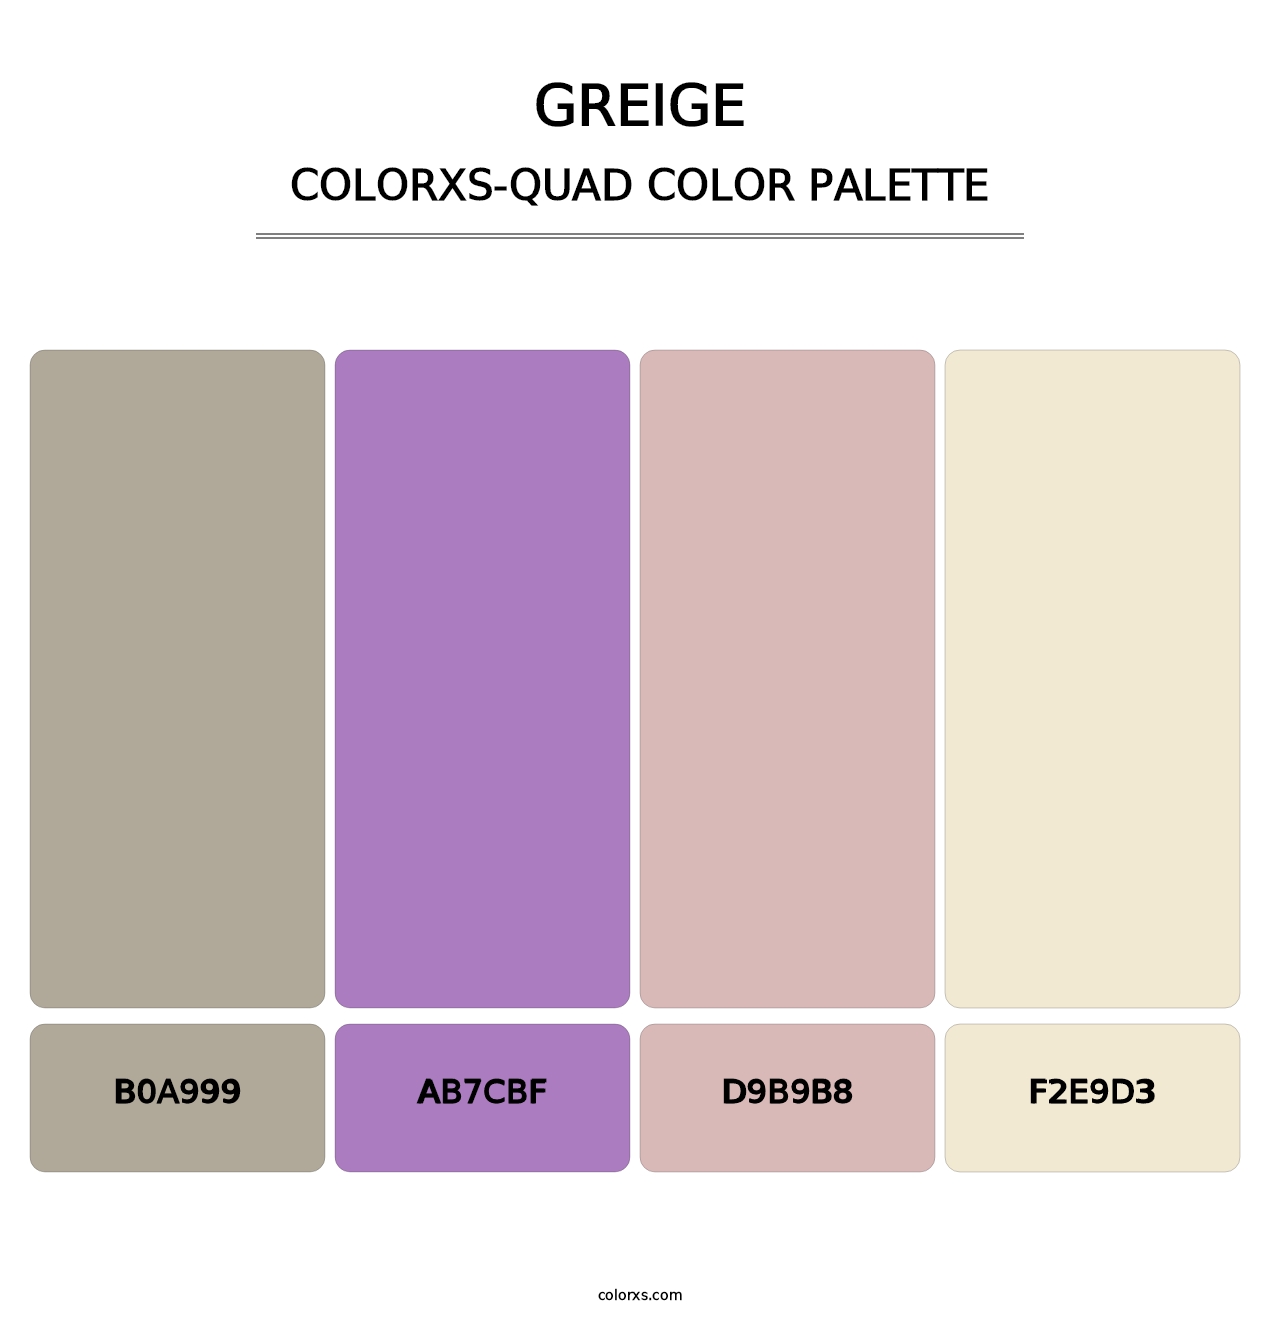 Greige - Colorxs Quad Palette